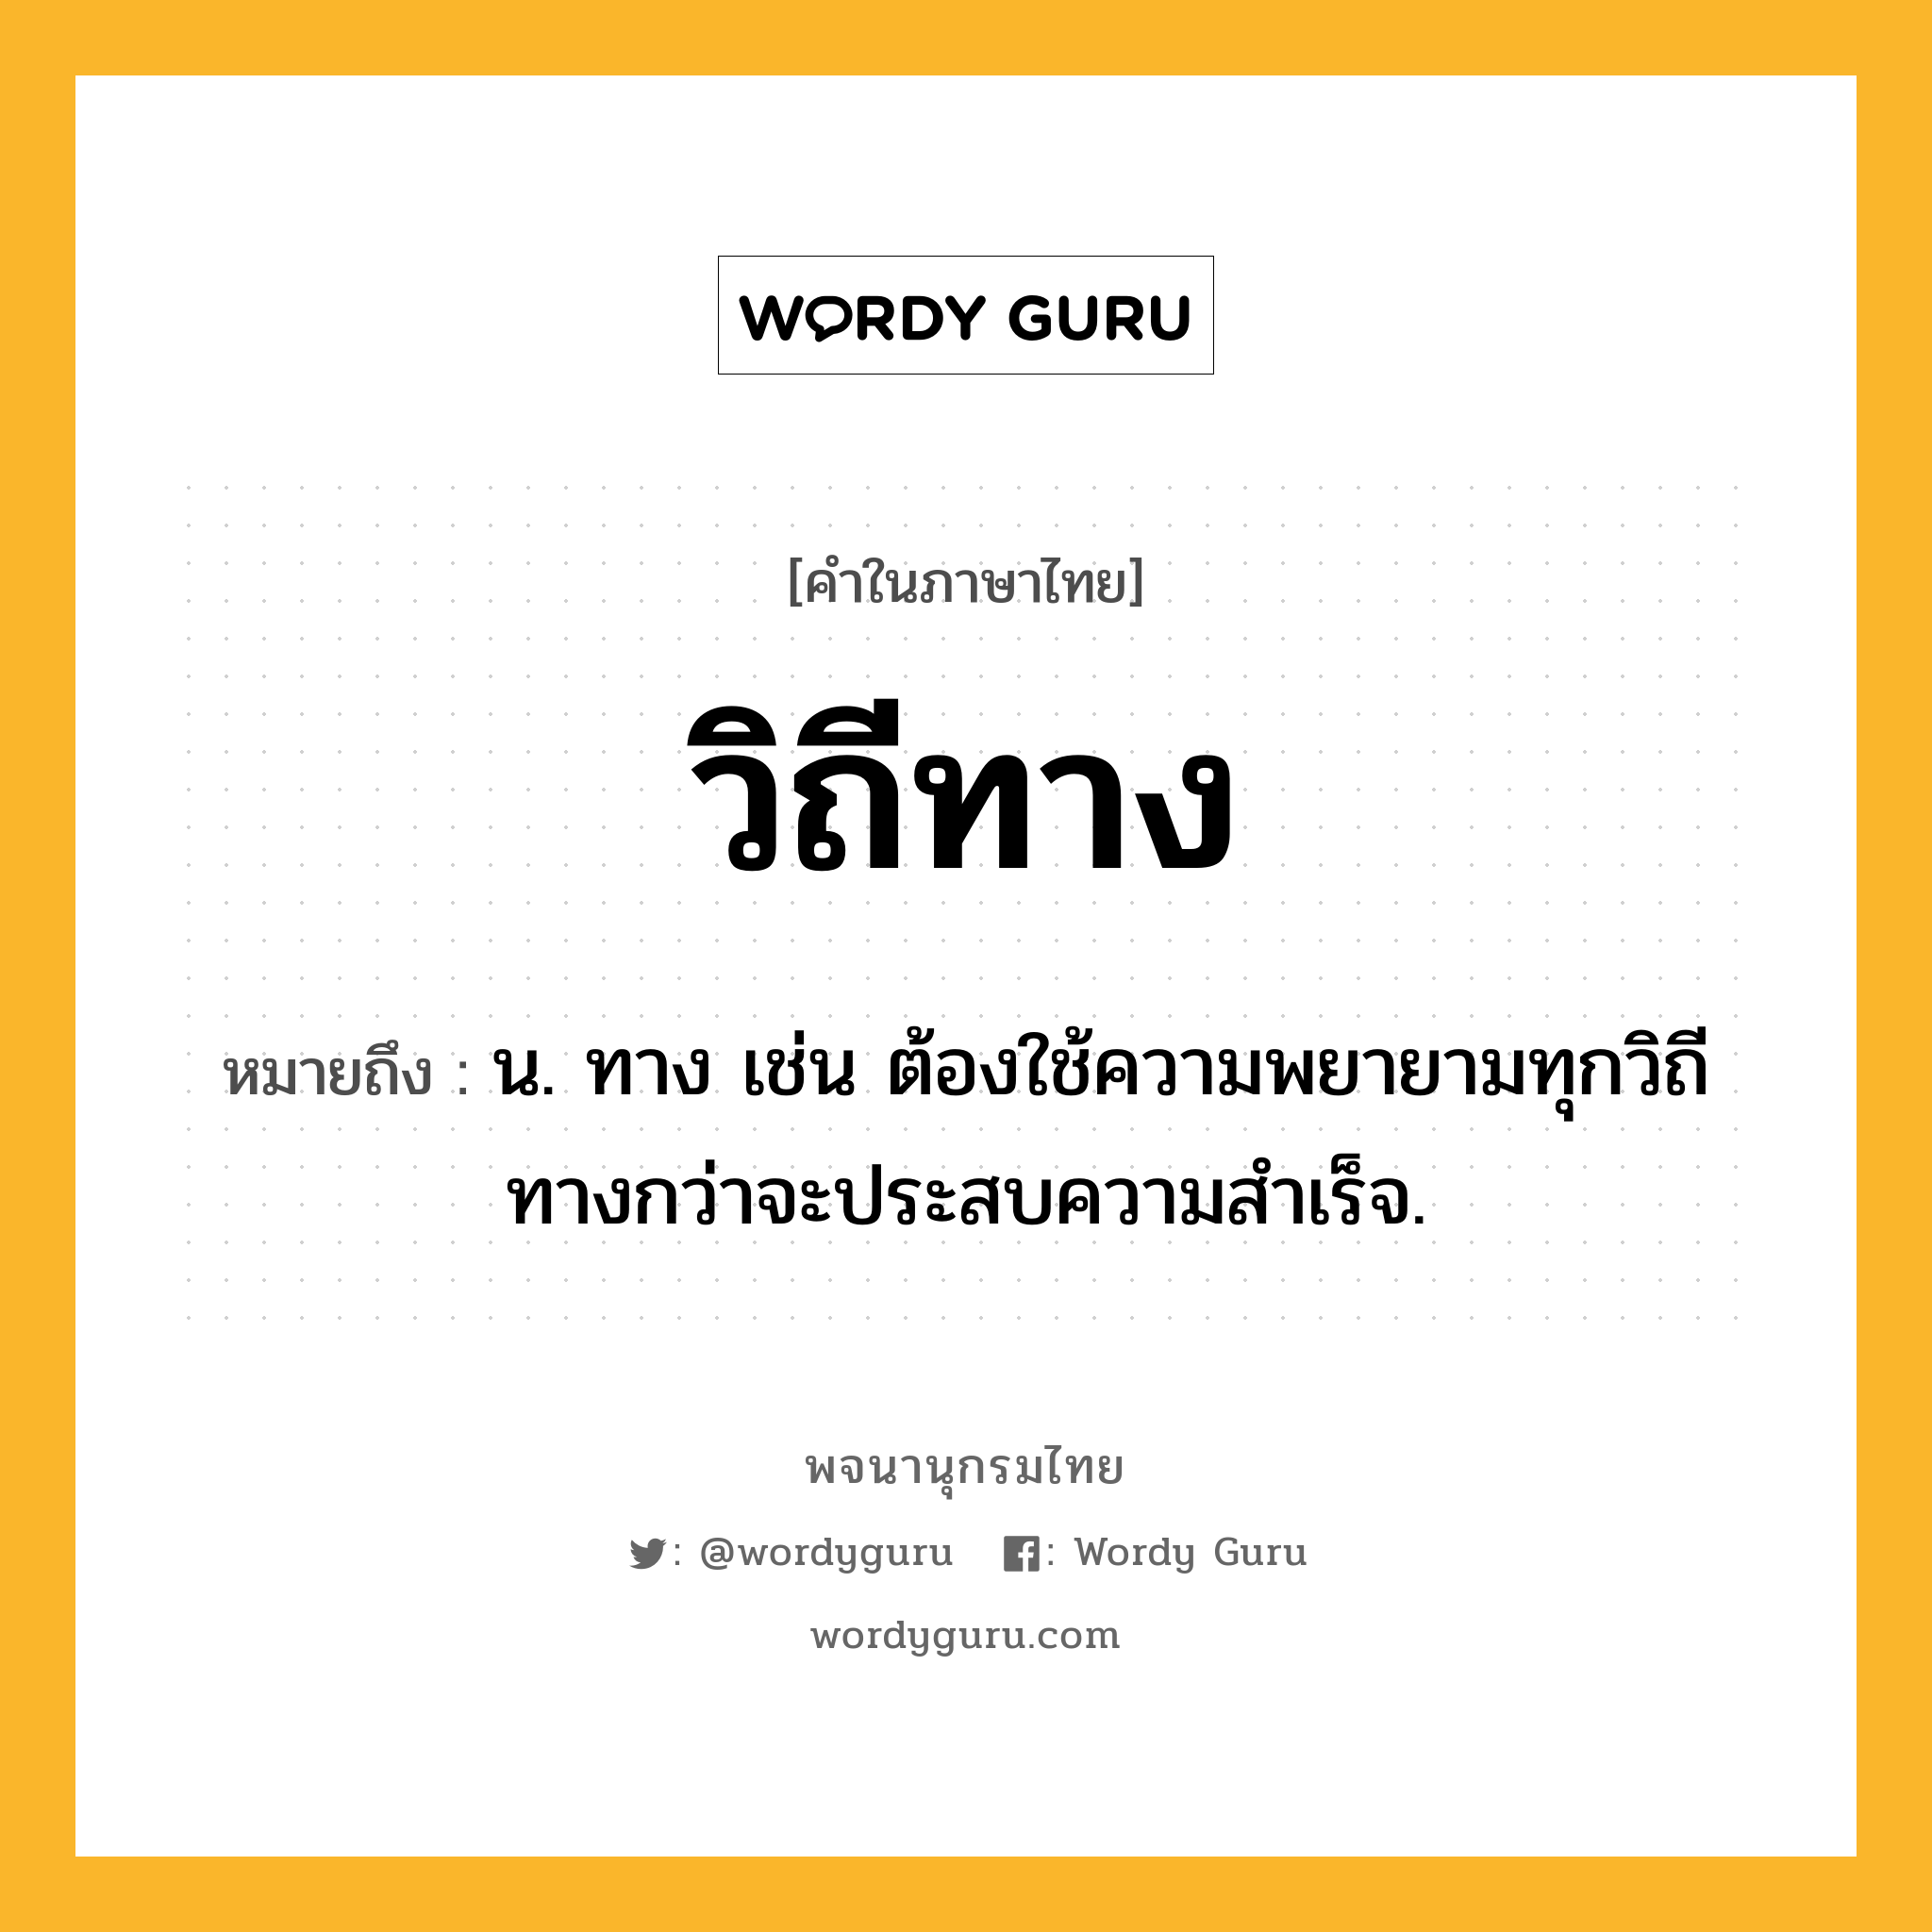 วิถีทาง ความหมาย หมายถึงอะไร?, คำในภาษาไทย วิถีทาง หมายถึง น. ทาง เช่น ต้องใช้ความพยายามทุกวิถีทางกว่าจะประสบความสำเร็จ.